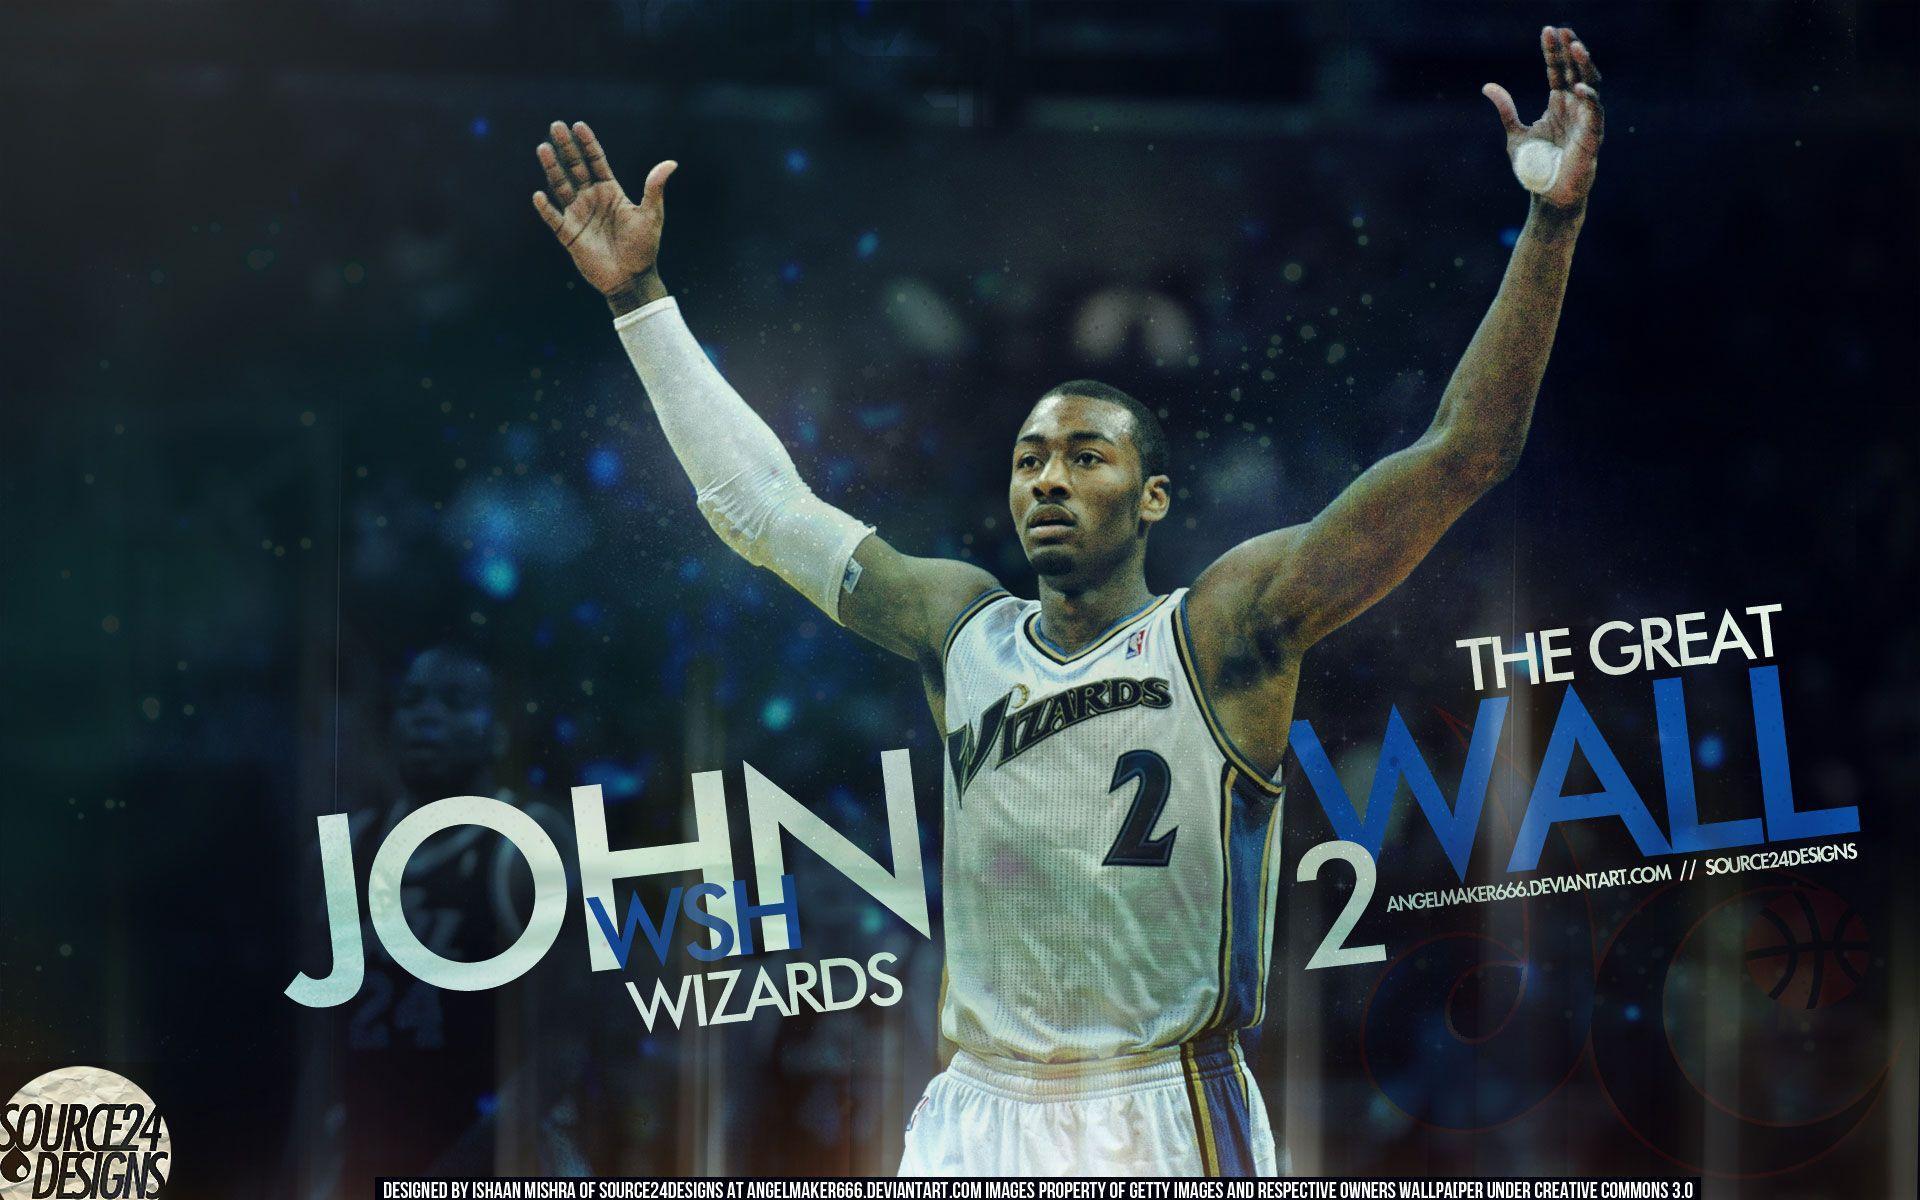 Washington Wizards Wallpaper. Basketball Wallpaper at